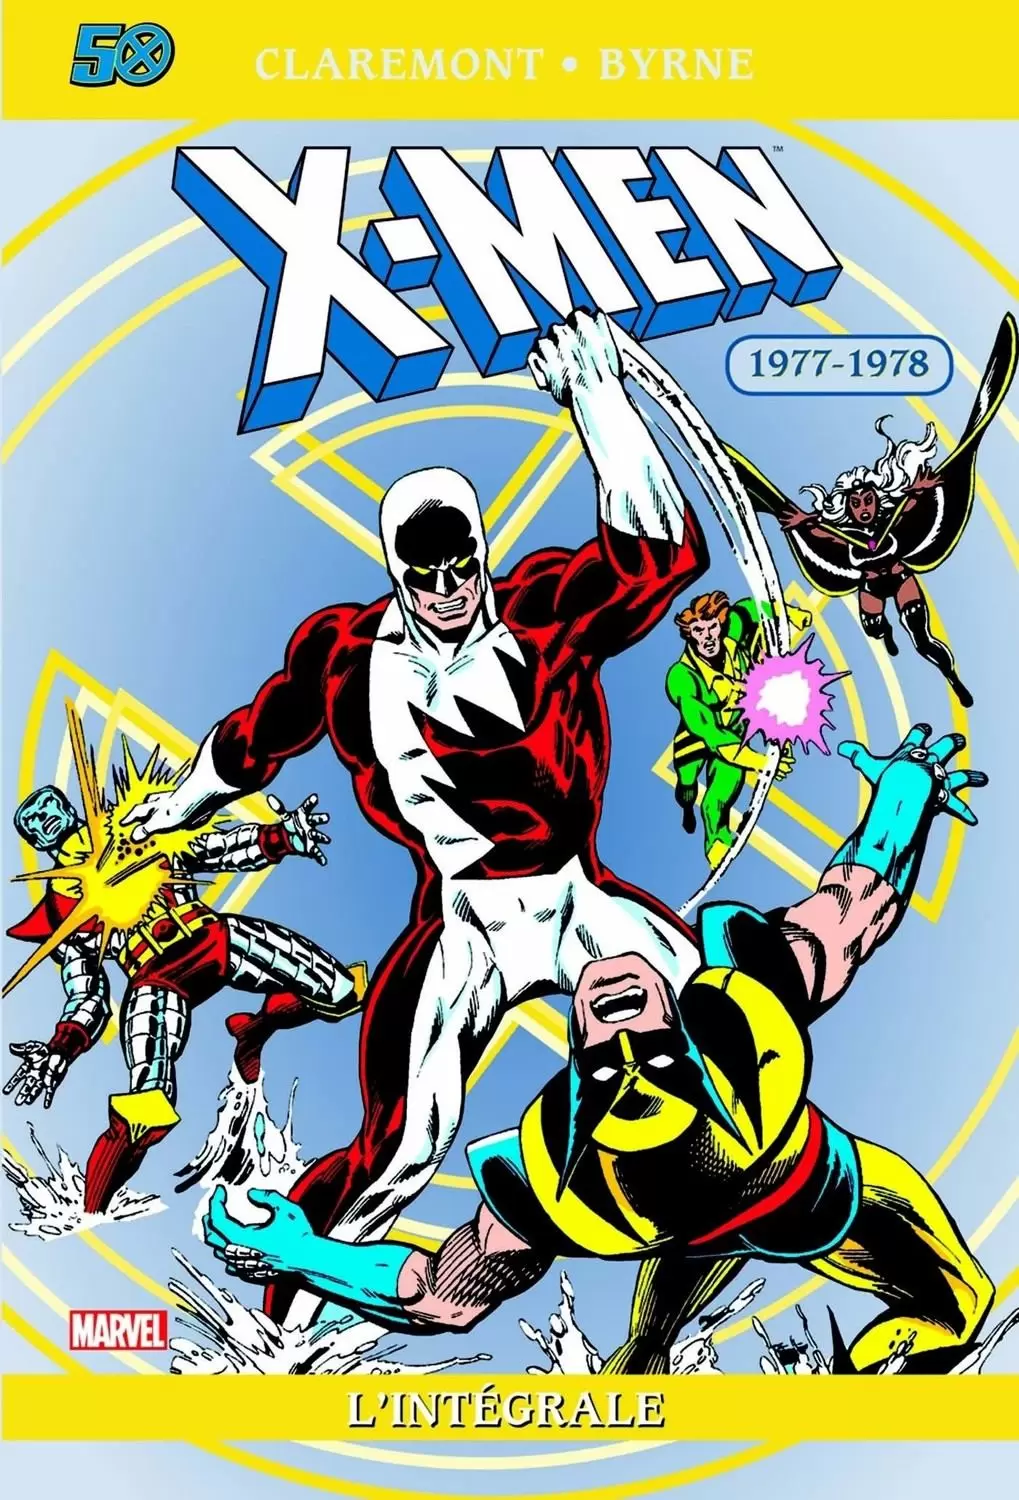 X-Men - X-Men 1977-1978 - Édition anniversaire 50 ans